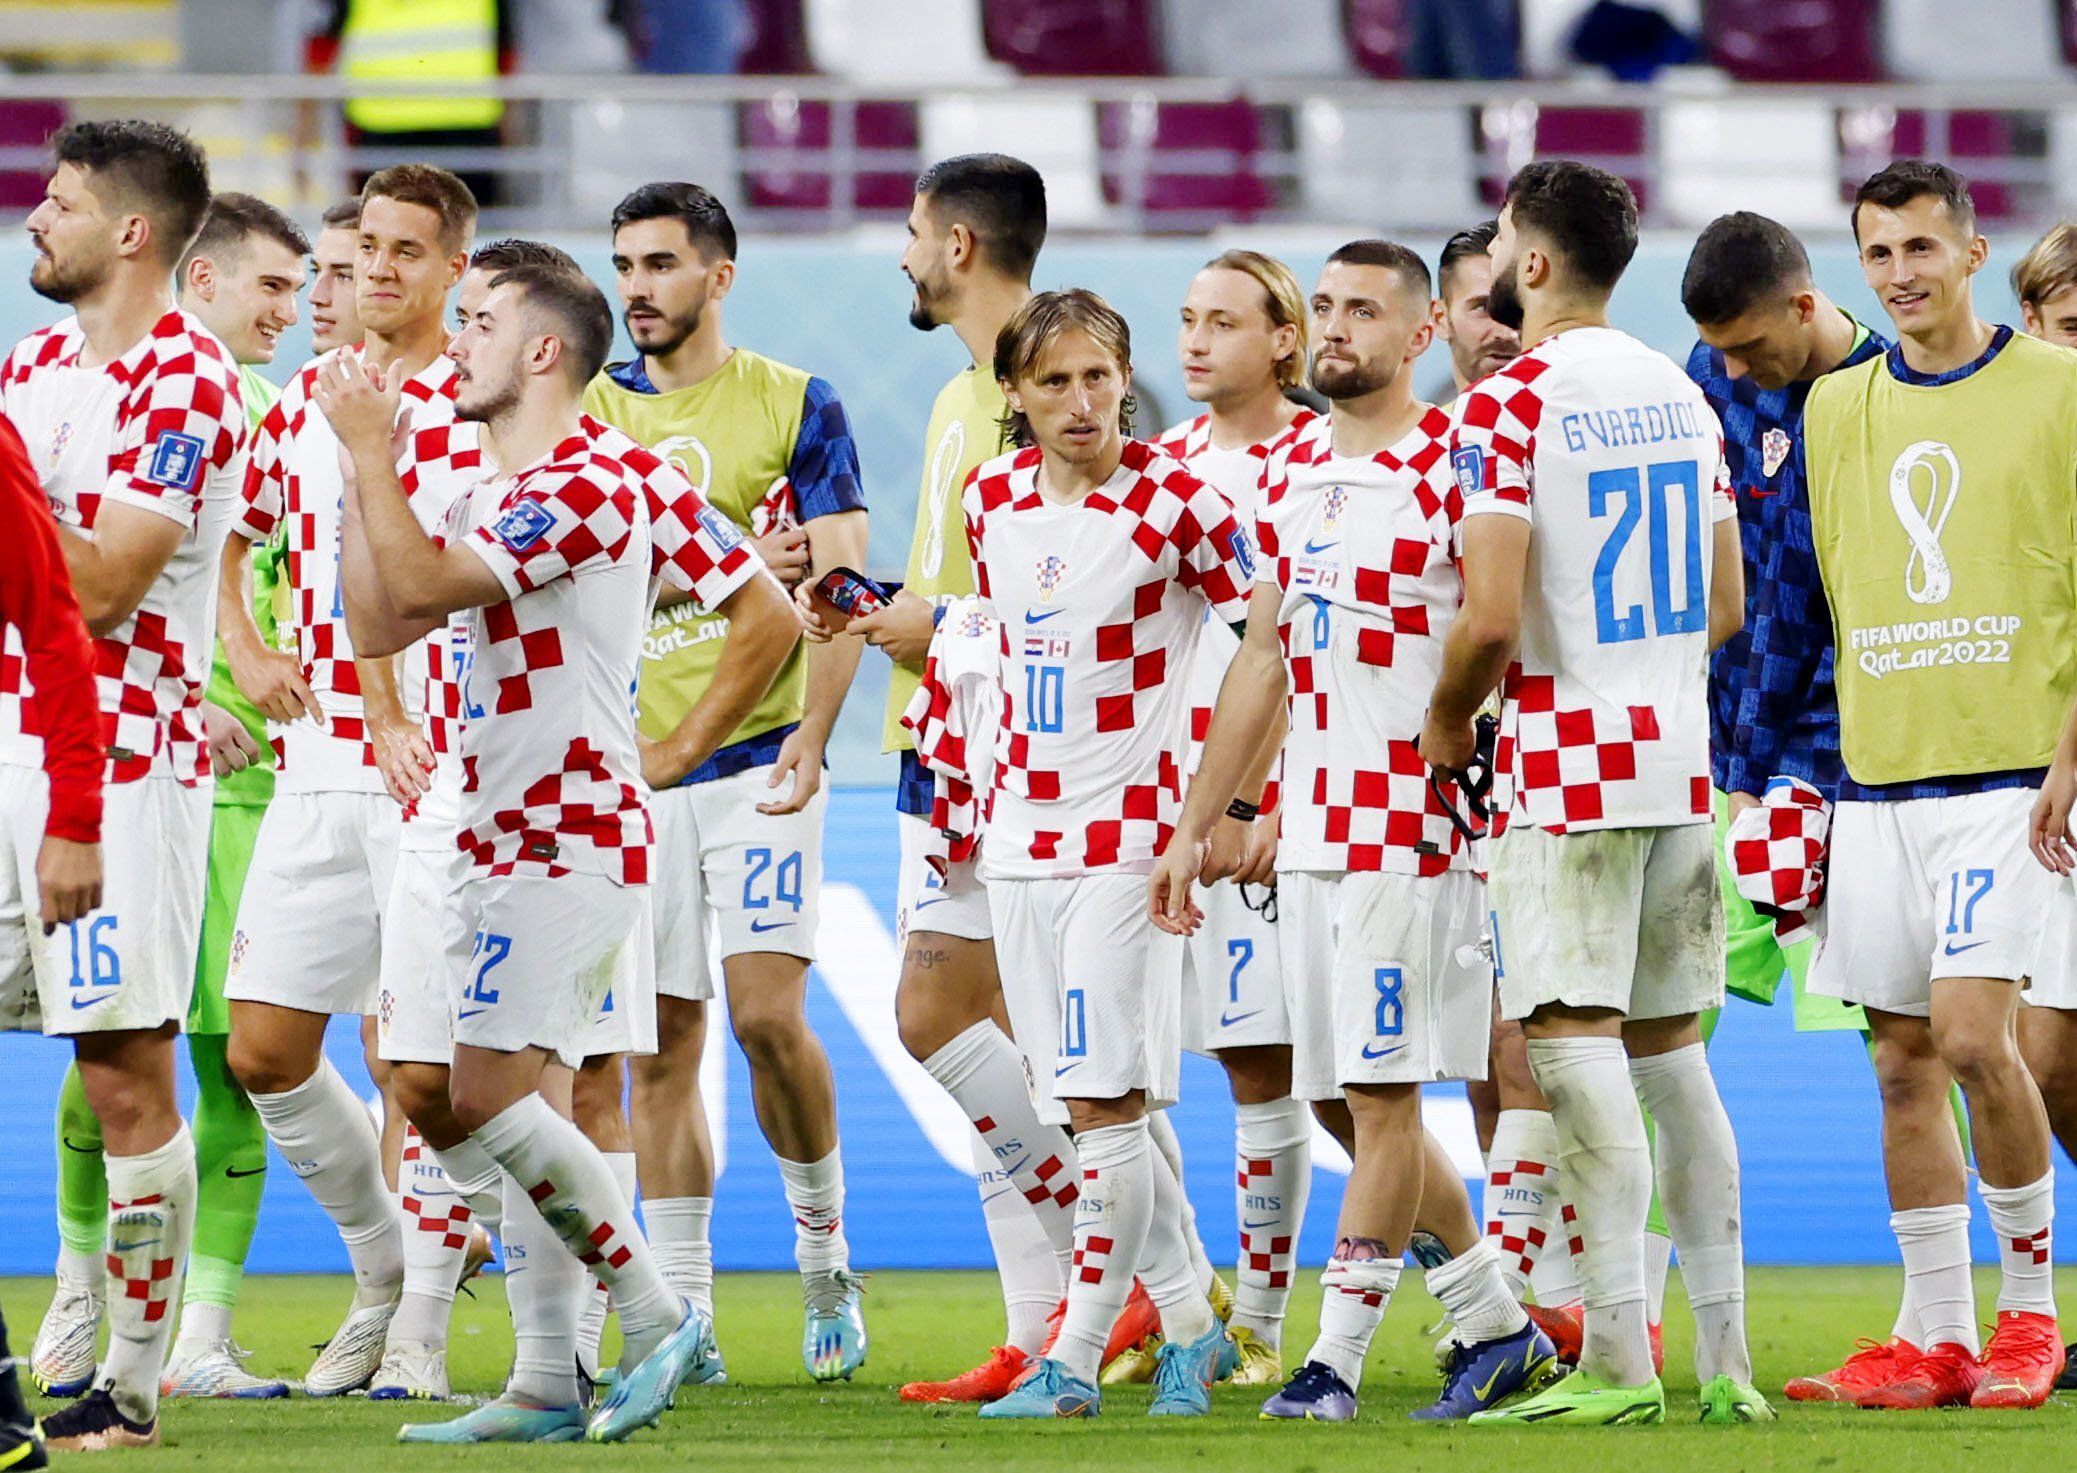 Sportal vébé TV: Vágó Fanny szerint a horvátoknak nem lesz könnyű a belgák ellen, de megoldják